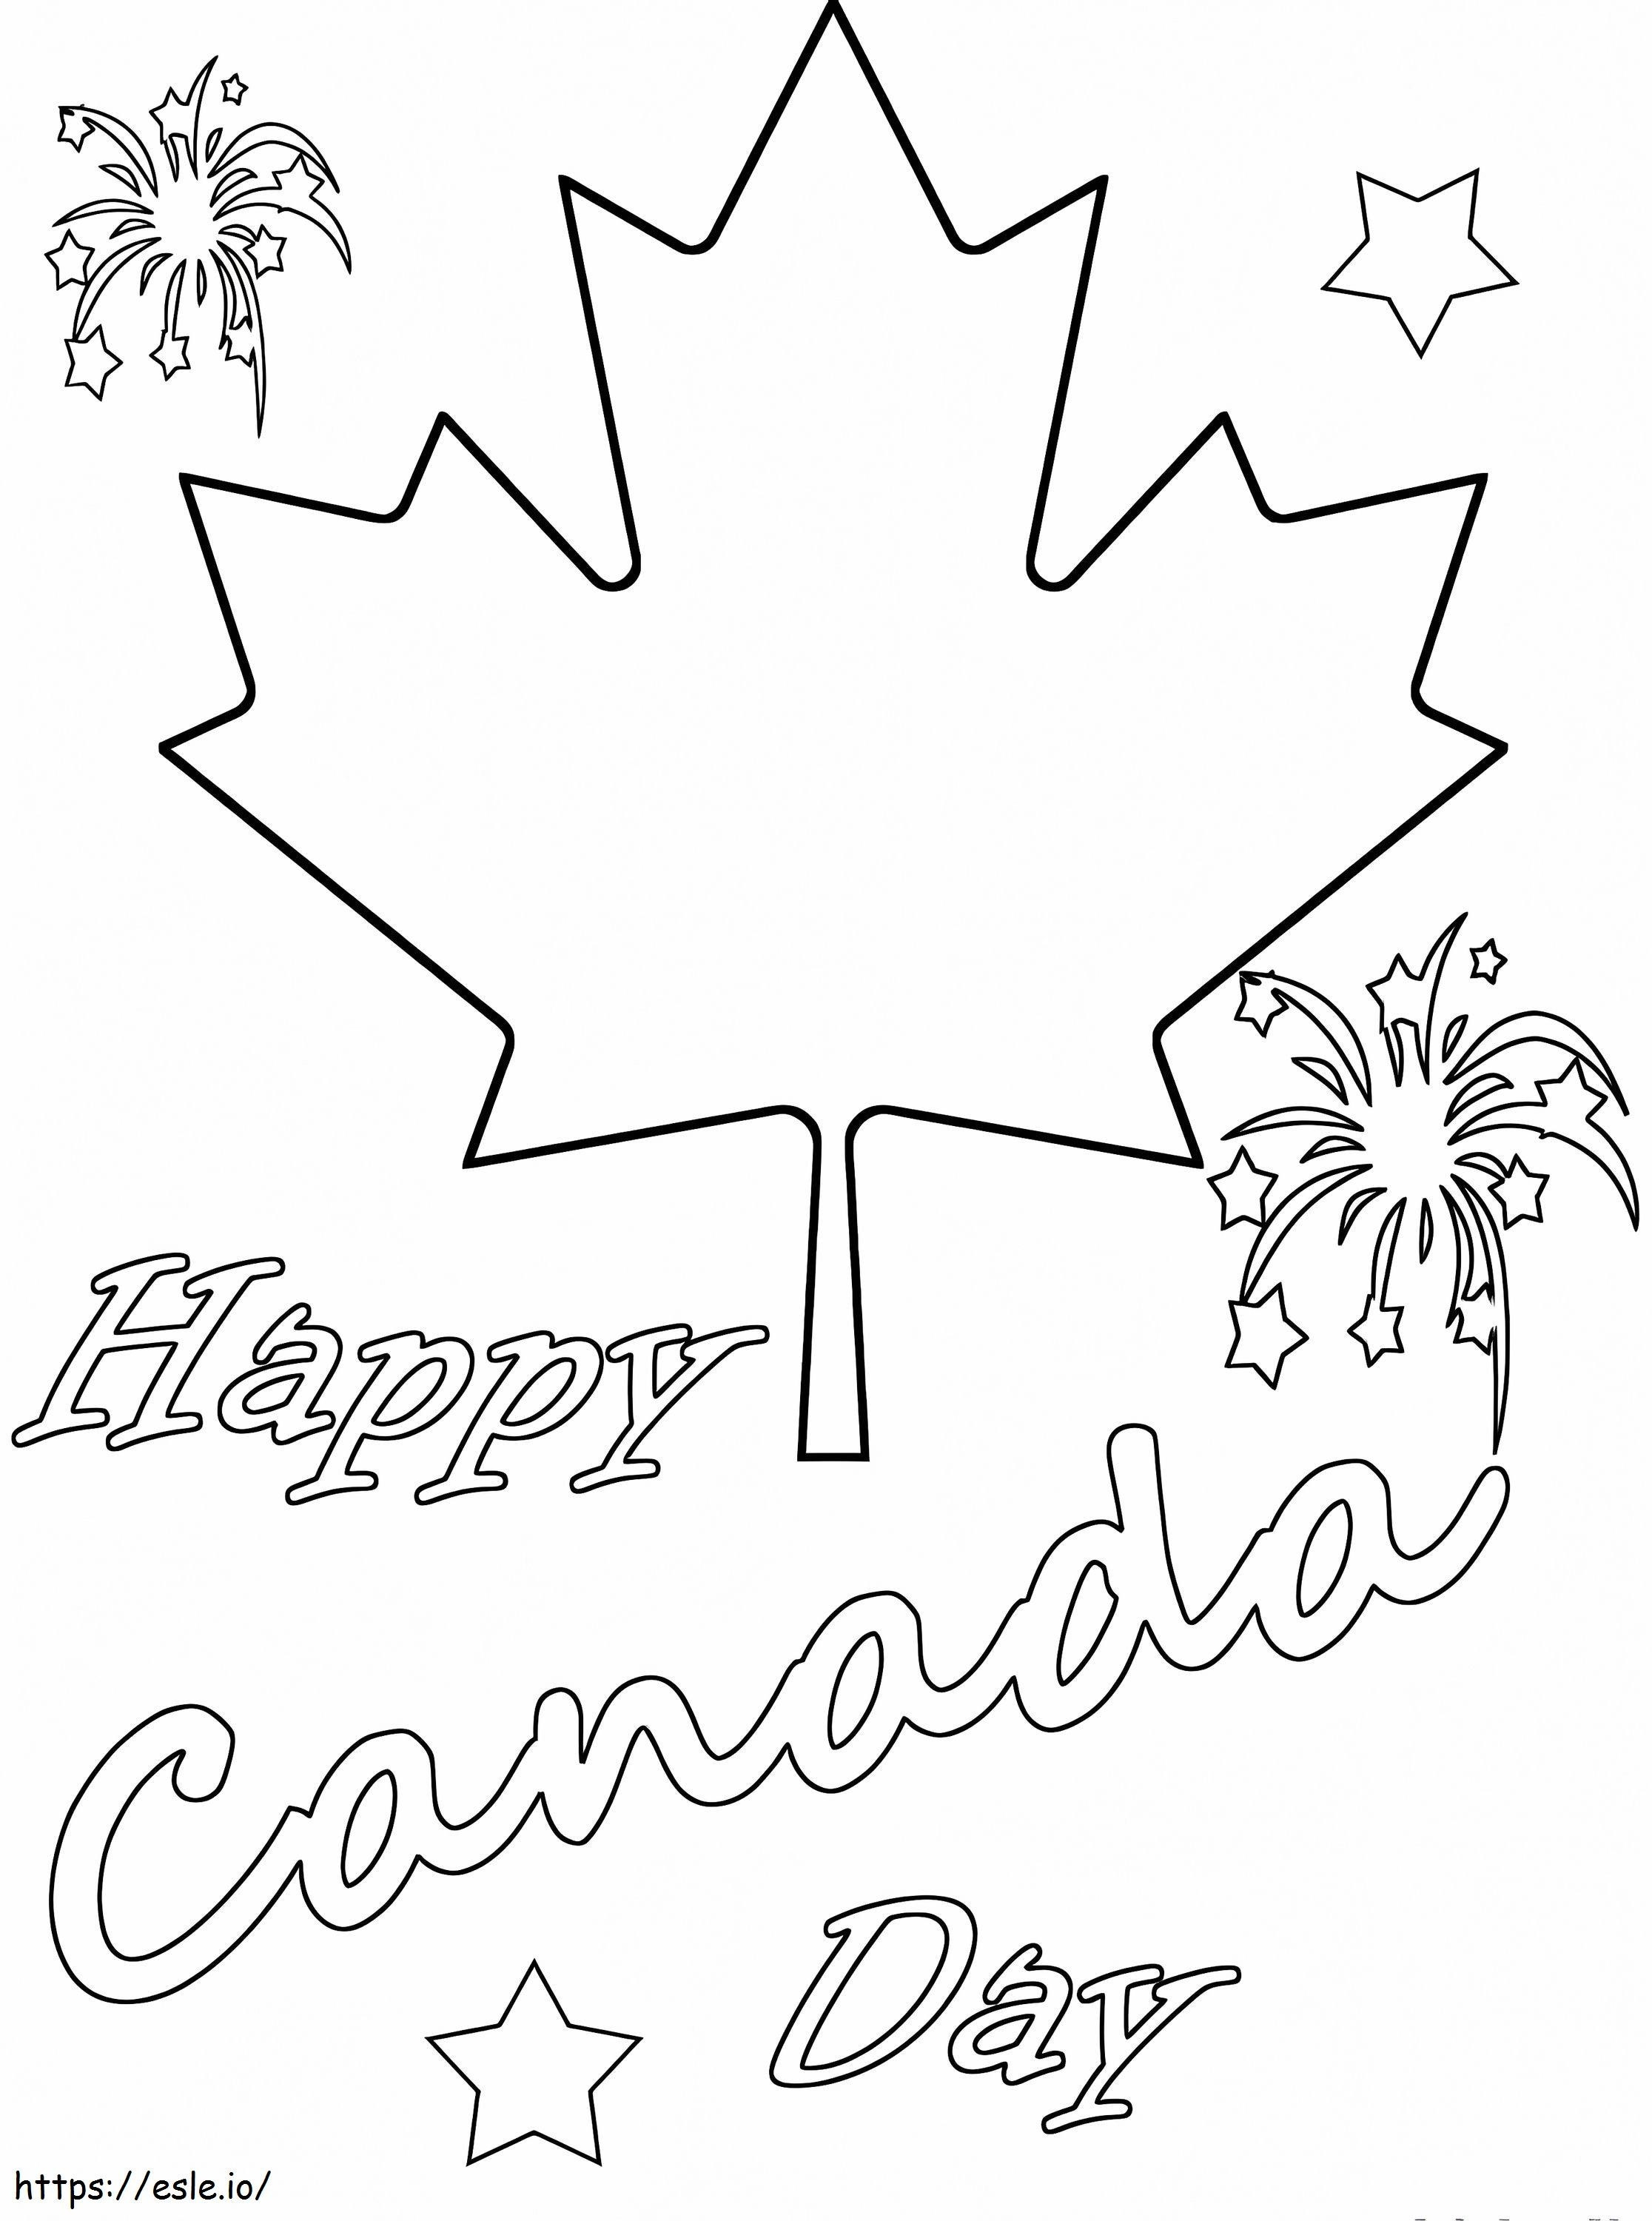 Szczęśliwego Dnia Kanady 7 kolorowanka